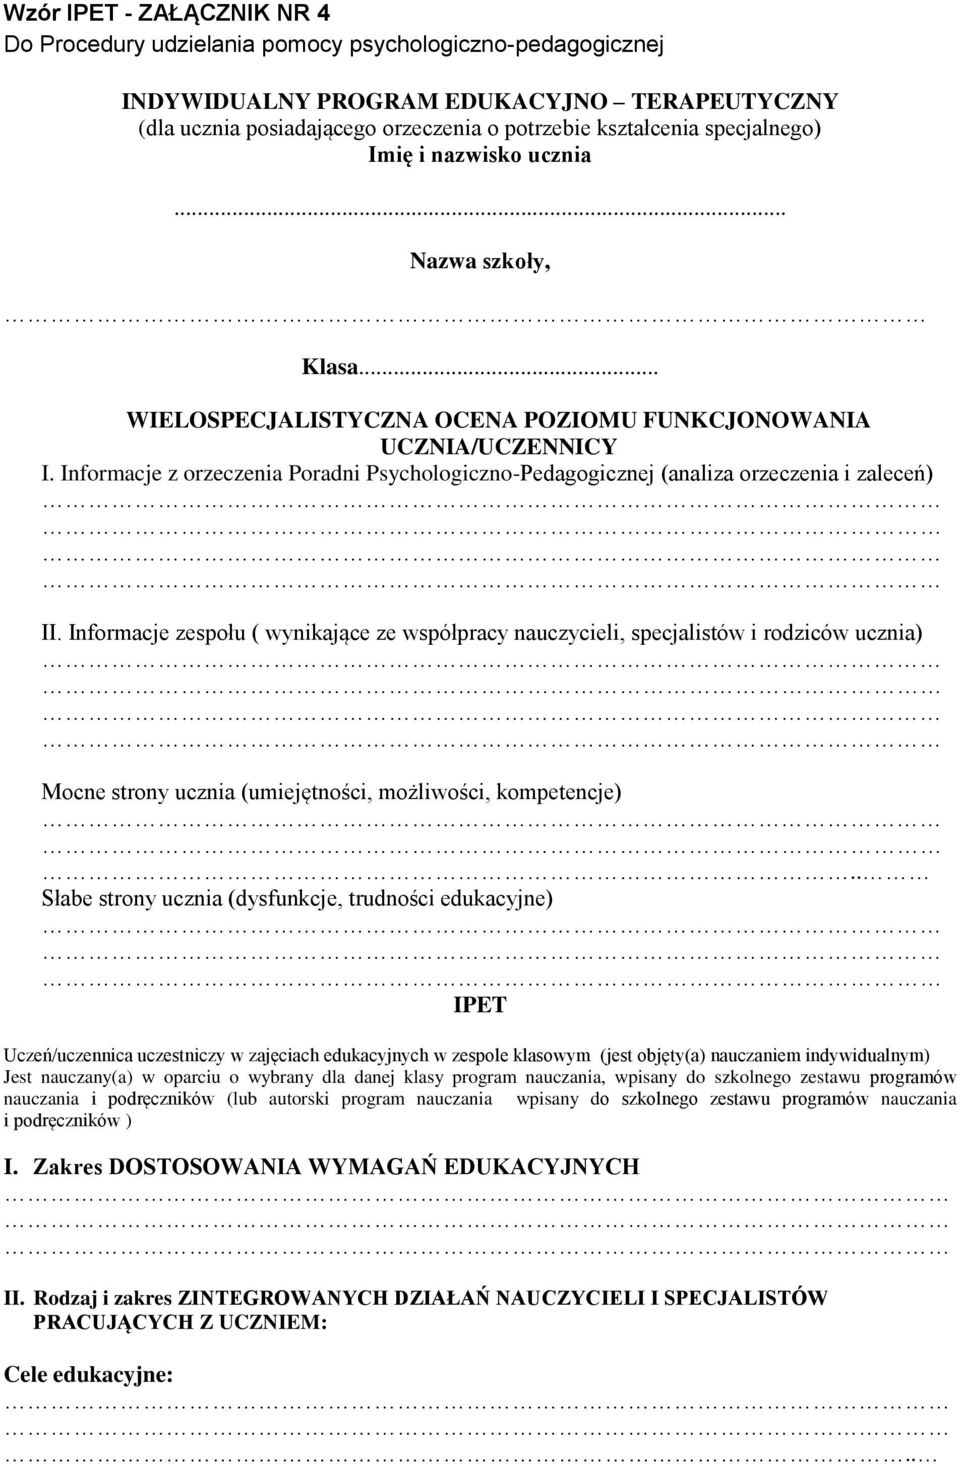 Informacje z orzeczenia Poradni Psychologiczno-Pedagogicznej (analiza orzeczenia i zaleceń) II.